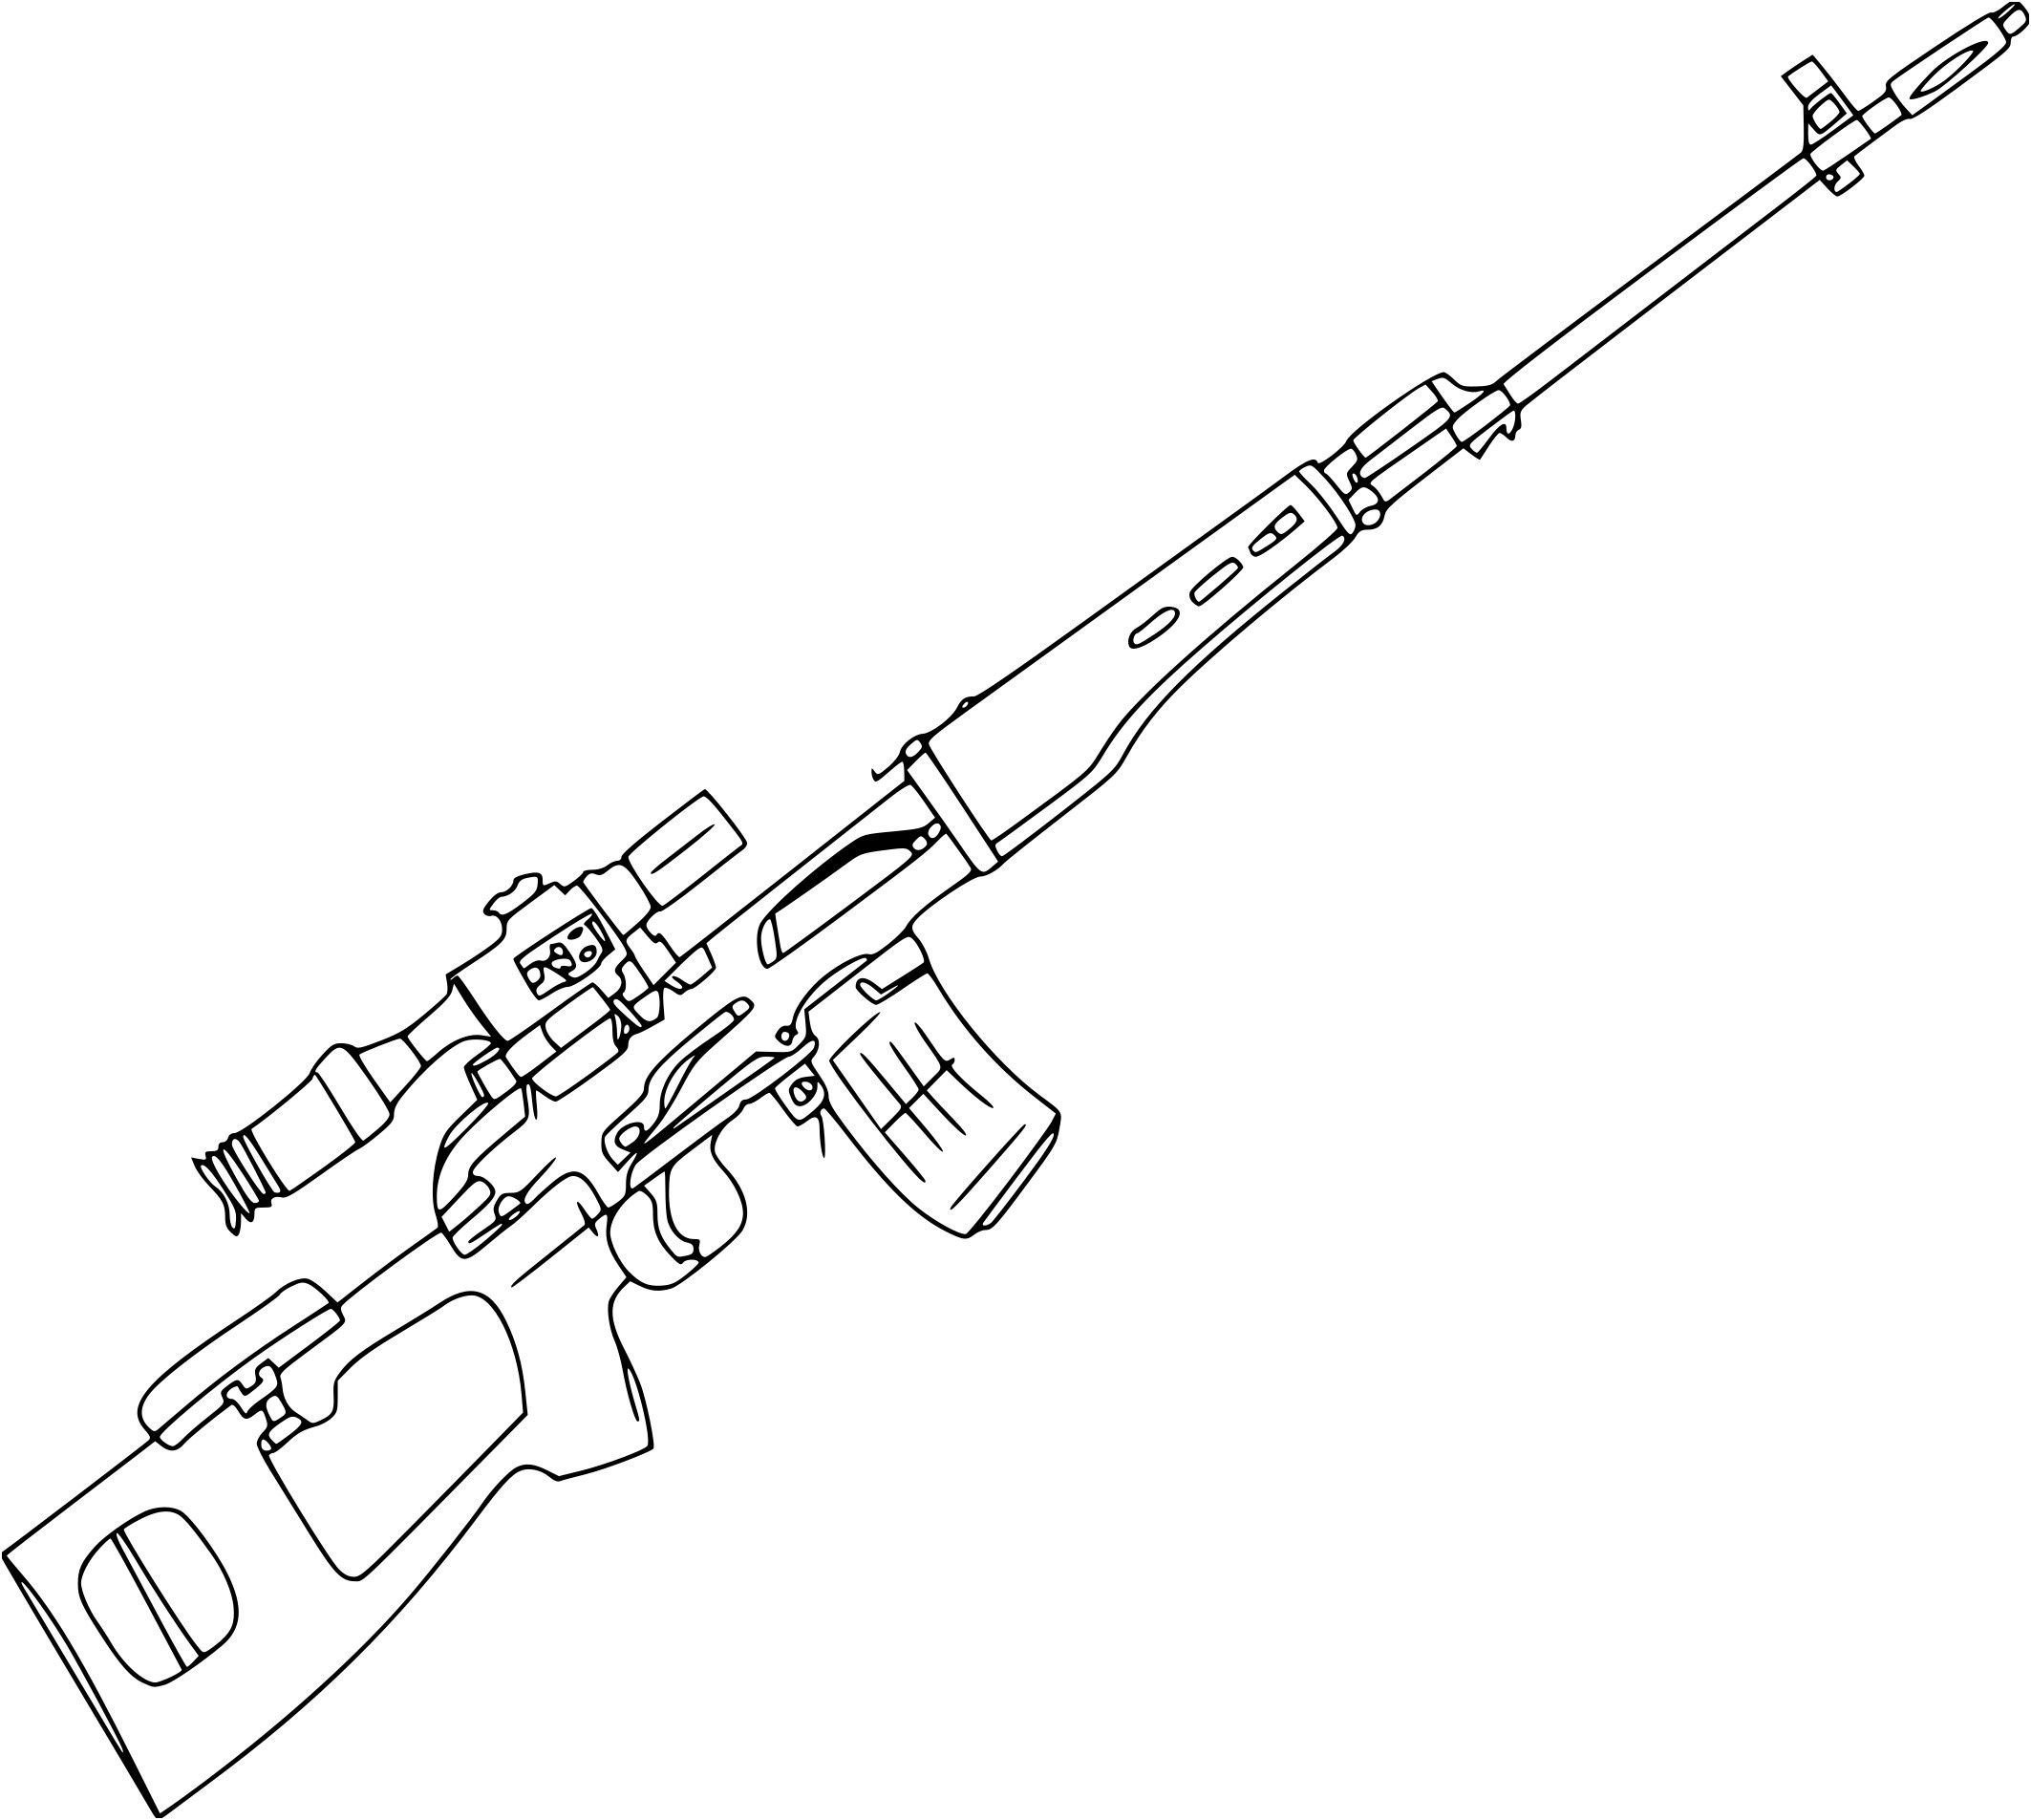 Снайперская винтовка АВМ чертёж